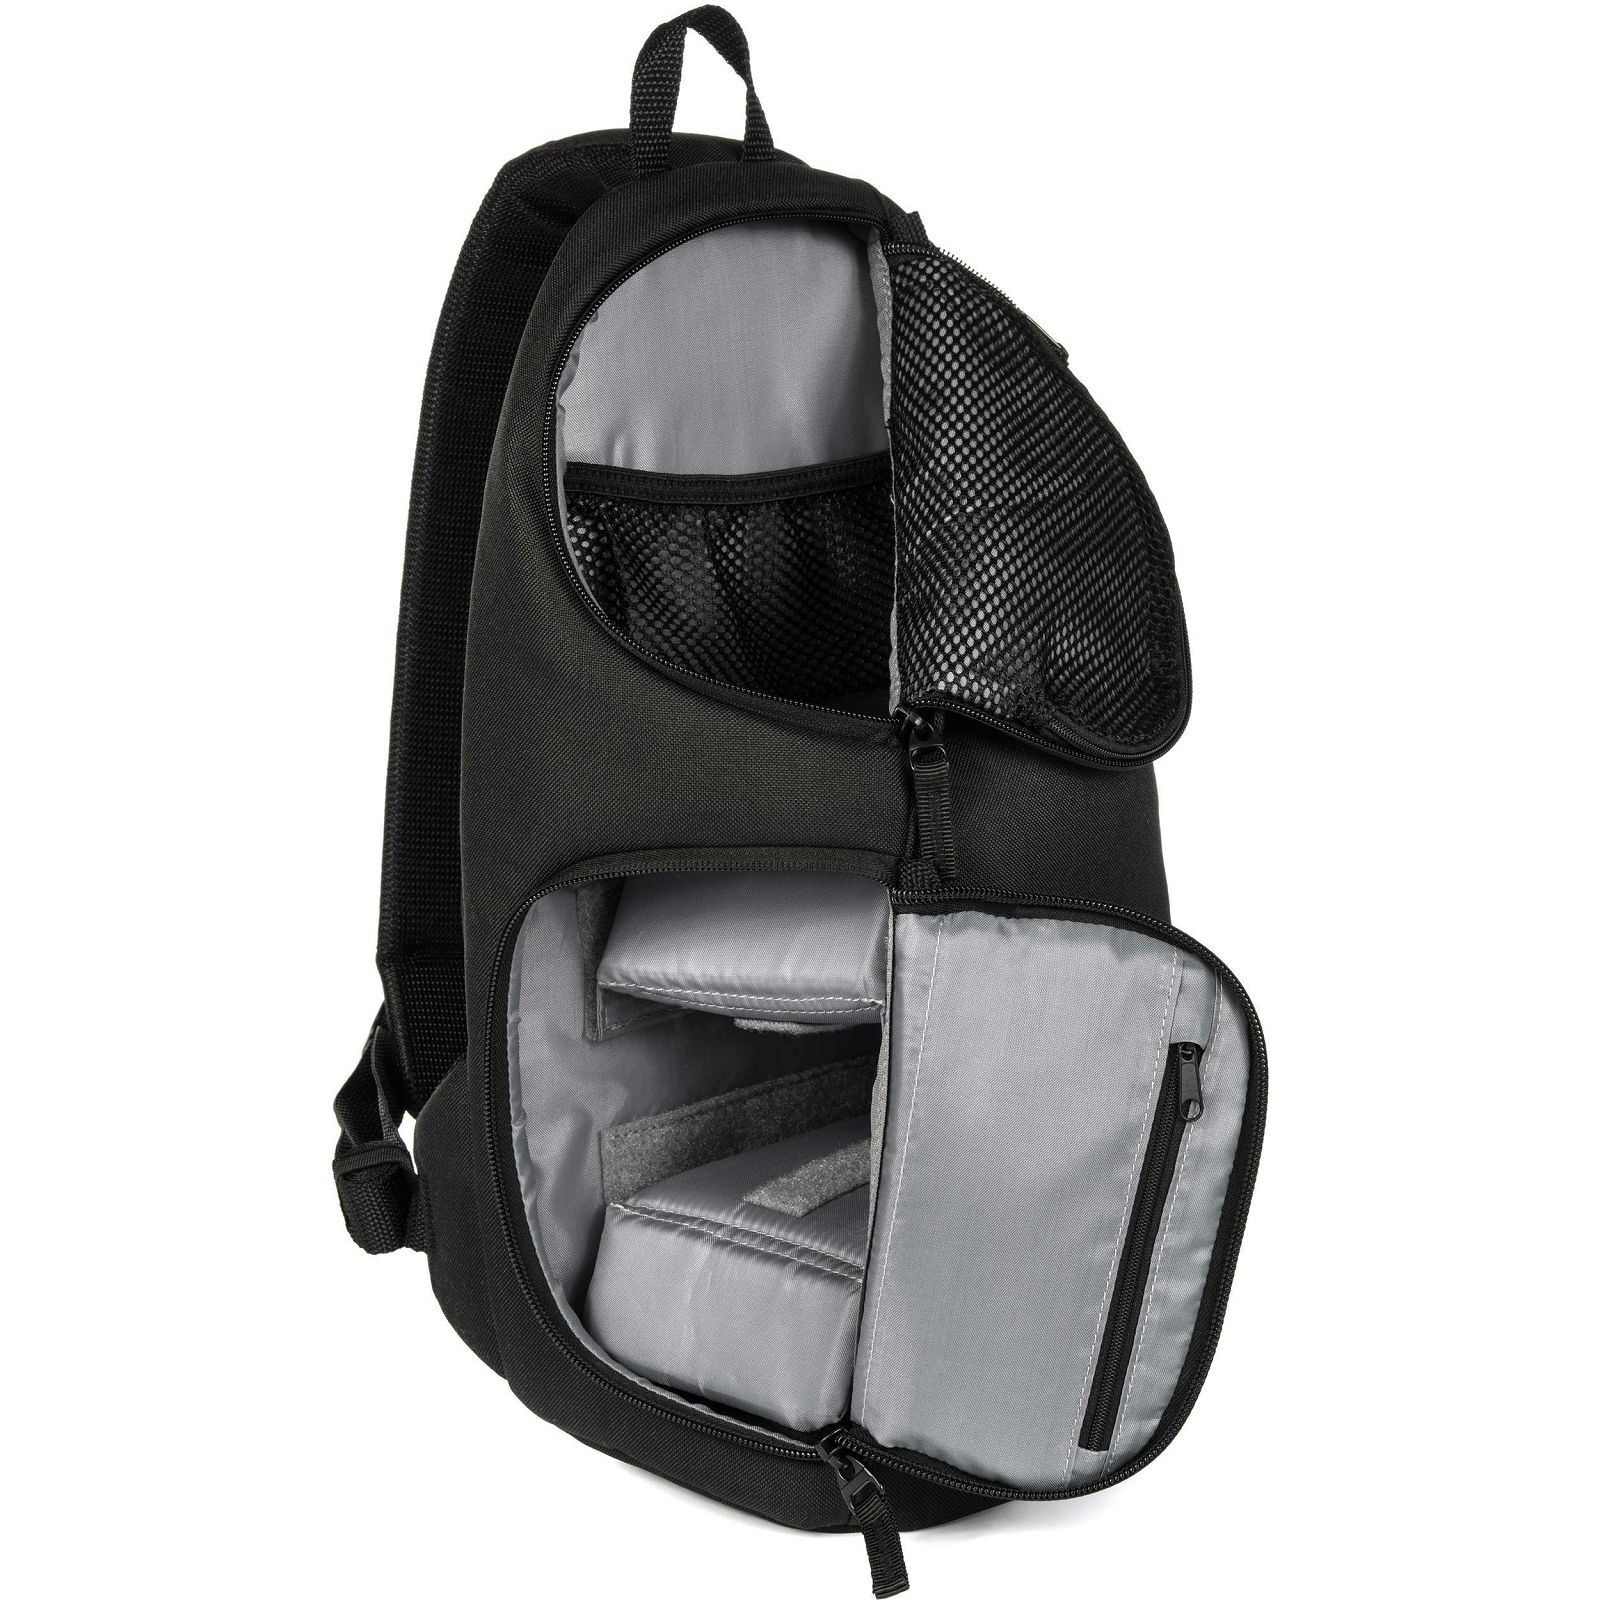 Tamrac Jazz 76 v2.0 black crni sling ruksak za foto opremu (T2276-1919)